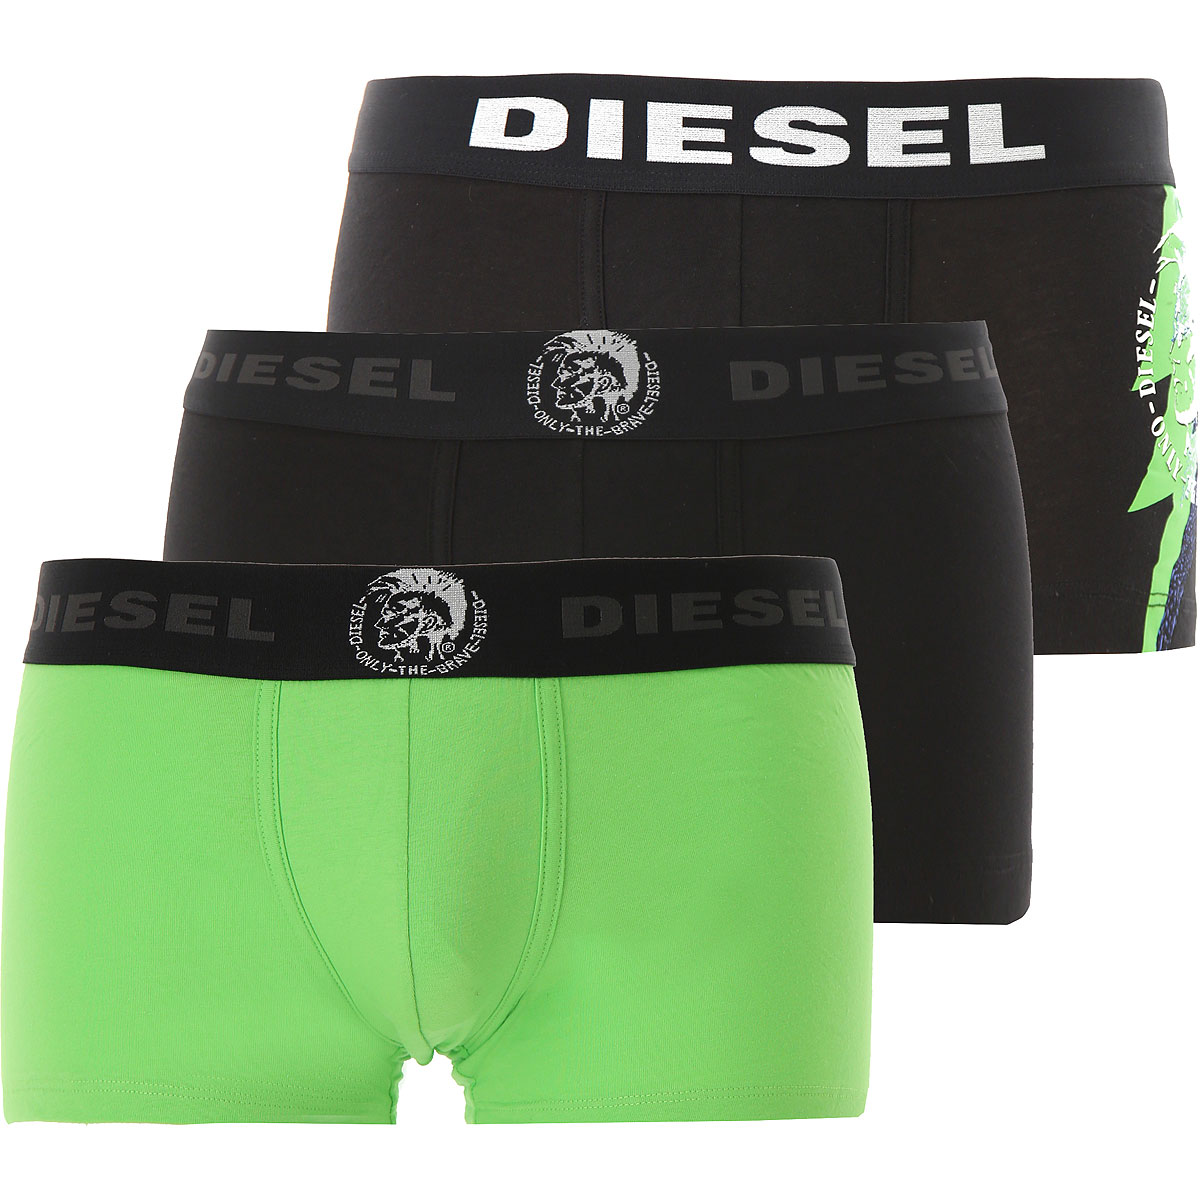 Diesel Boxer Shorts für Herren, Unterhose, Short, Boxer Günstig im Outlet Sale, 3 Pack, Fluo Grün, Baumwolle, 2017, L M